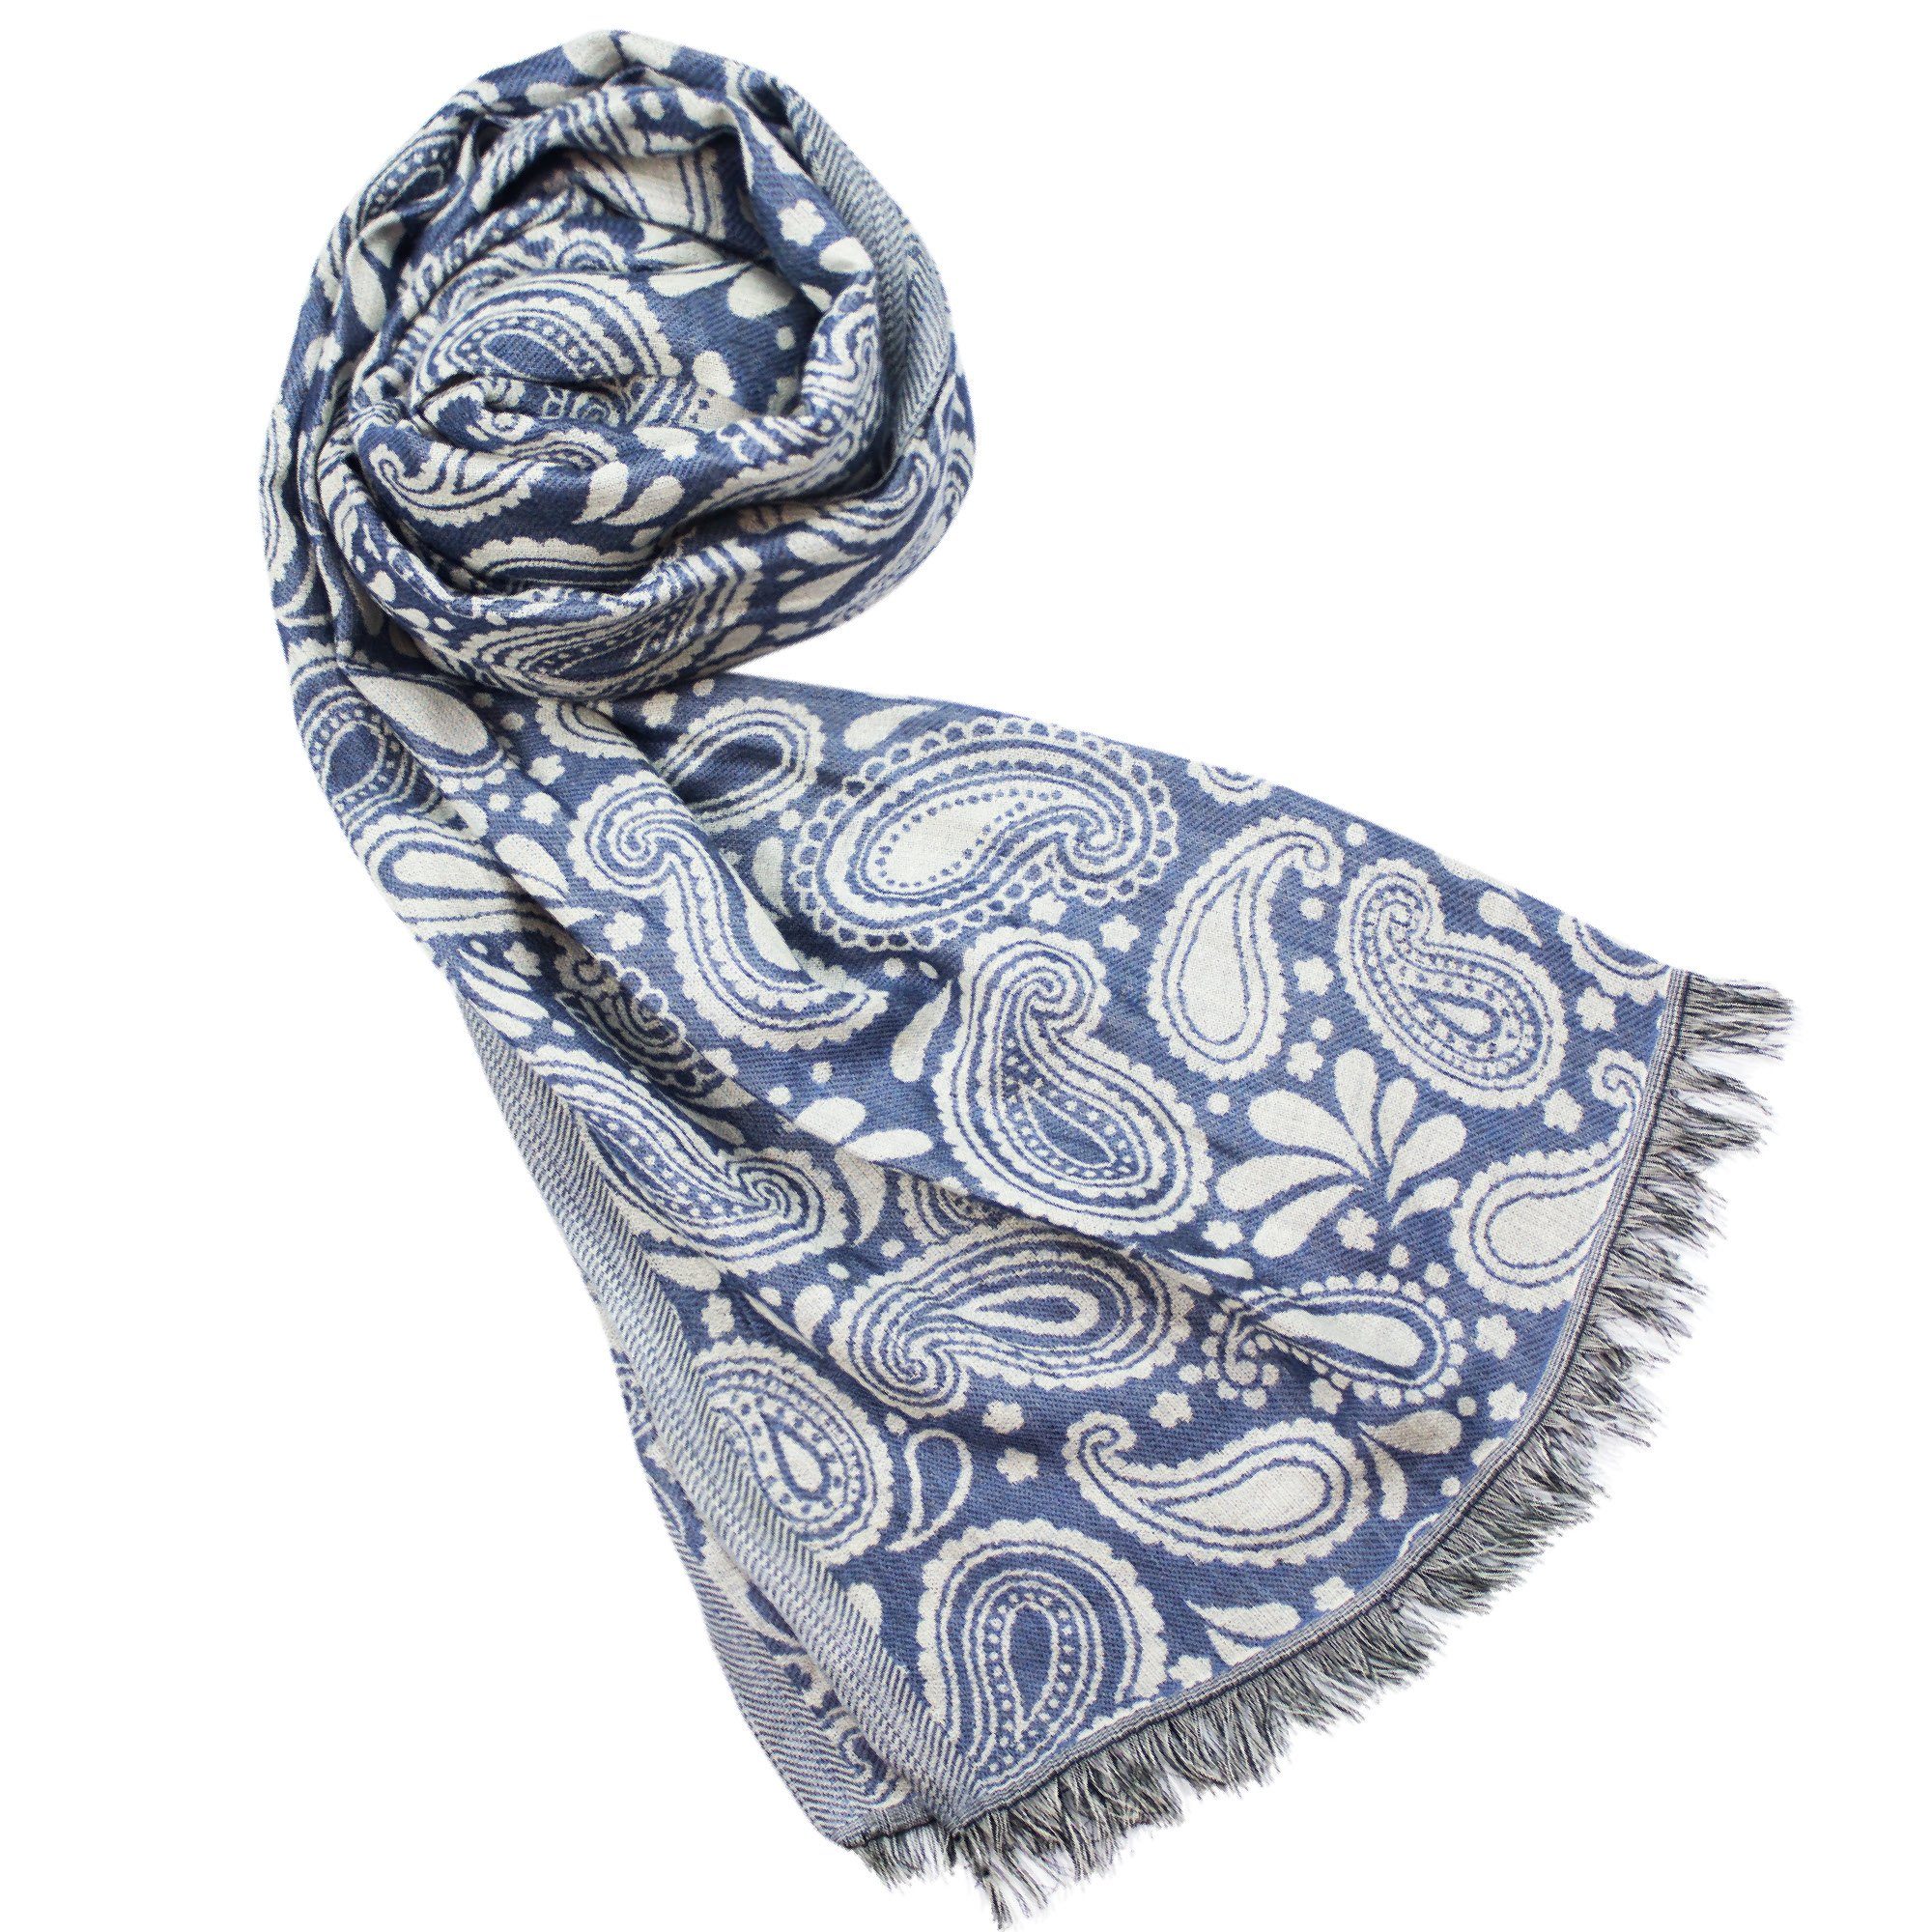 Sunsa Design, Schal Viskose Halstuch. 60% Paisley aus Design mit Große Blumen Sunsa Halstuch Baumwolle/40% blau Stola Damen Winterschal,